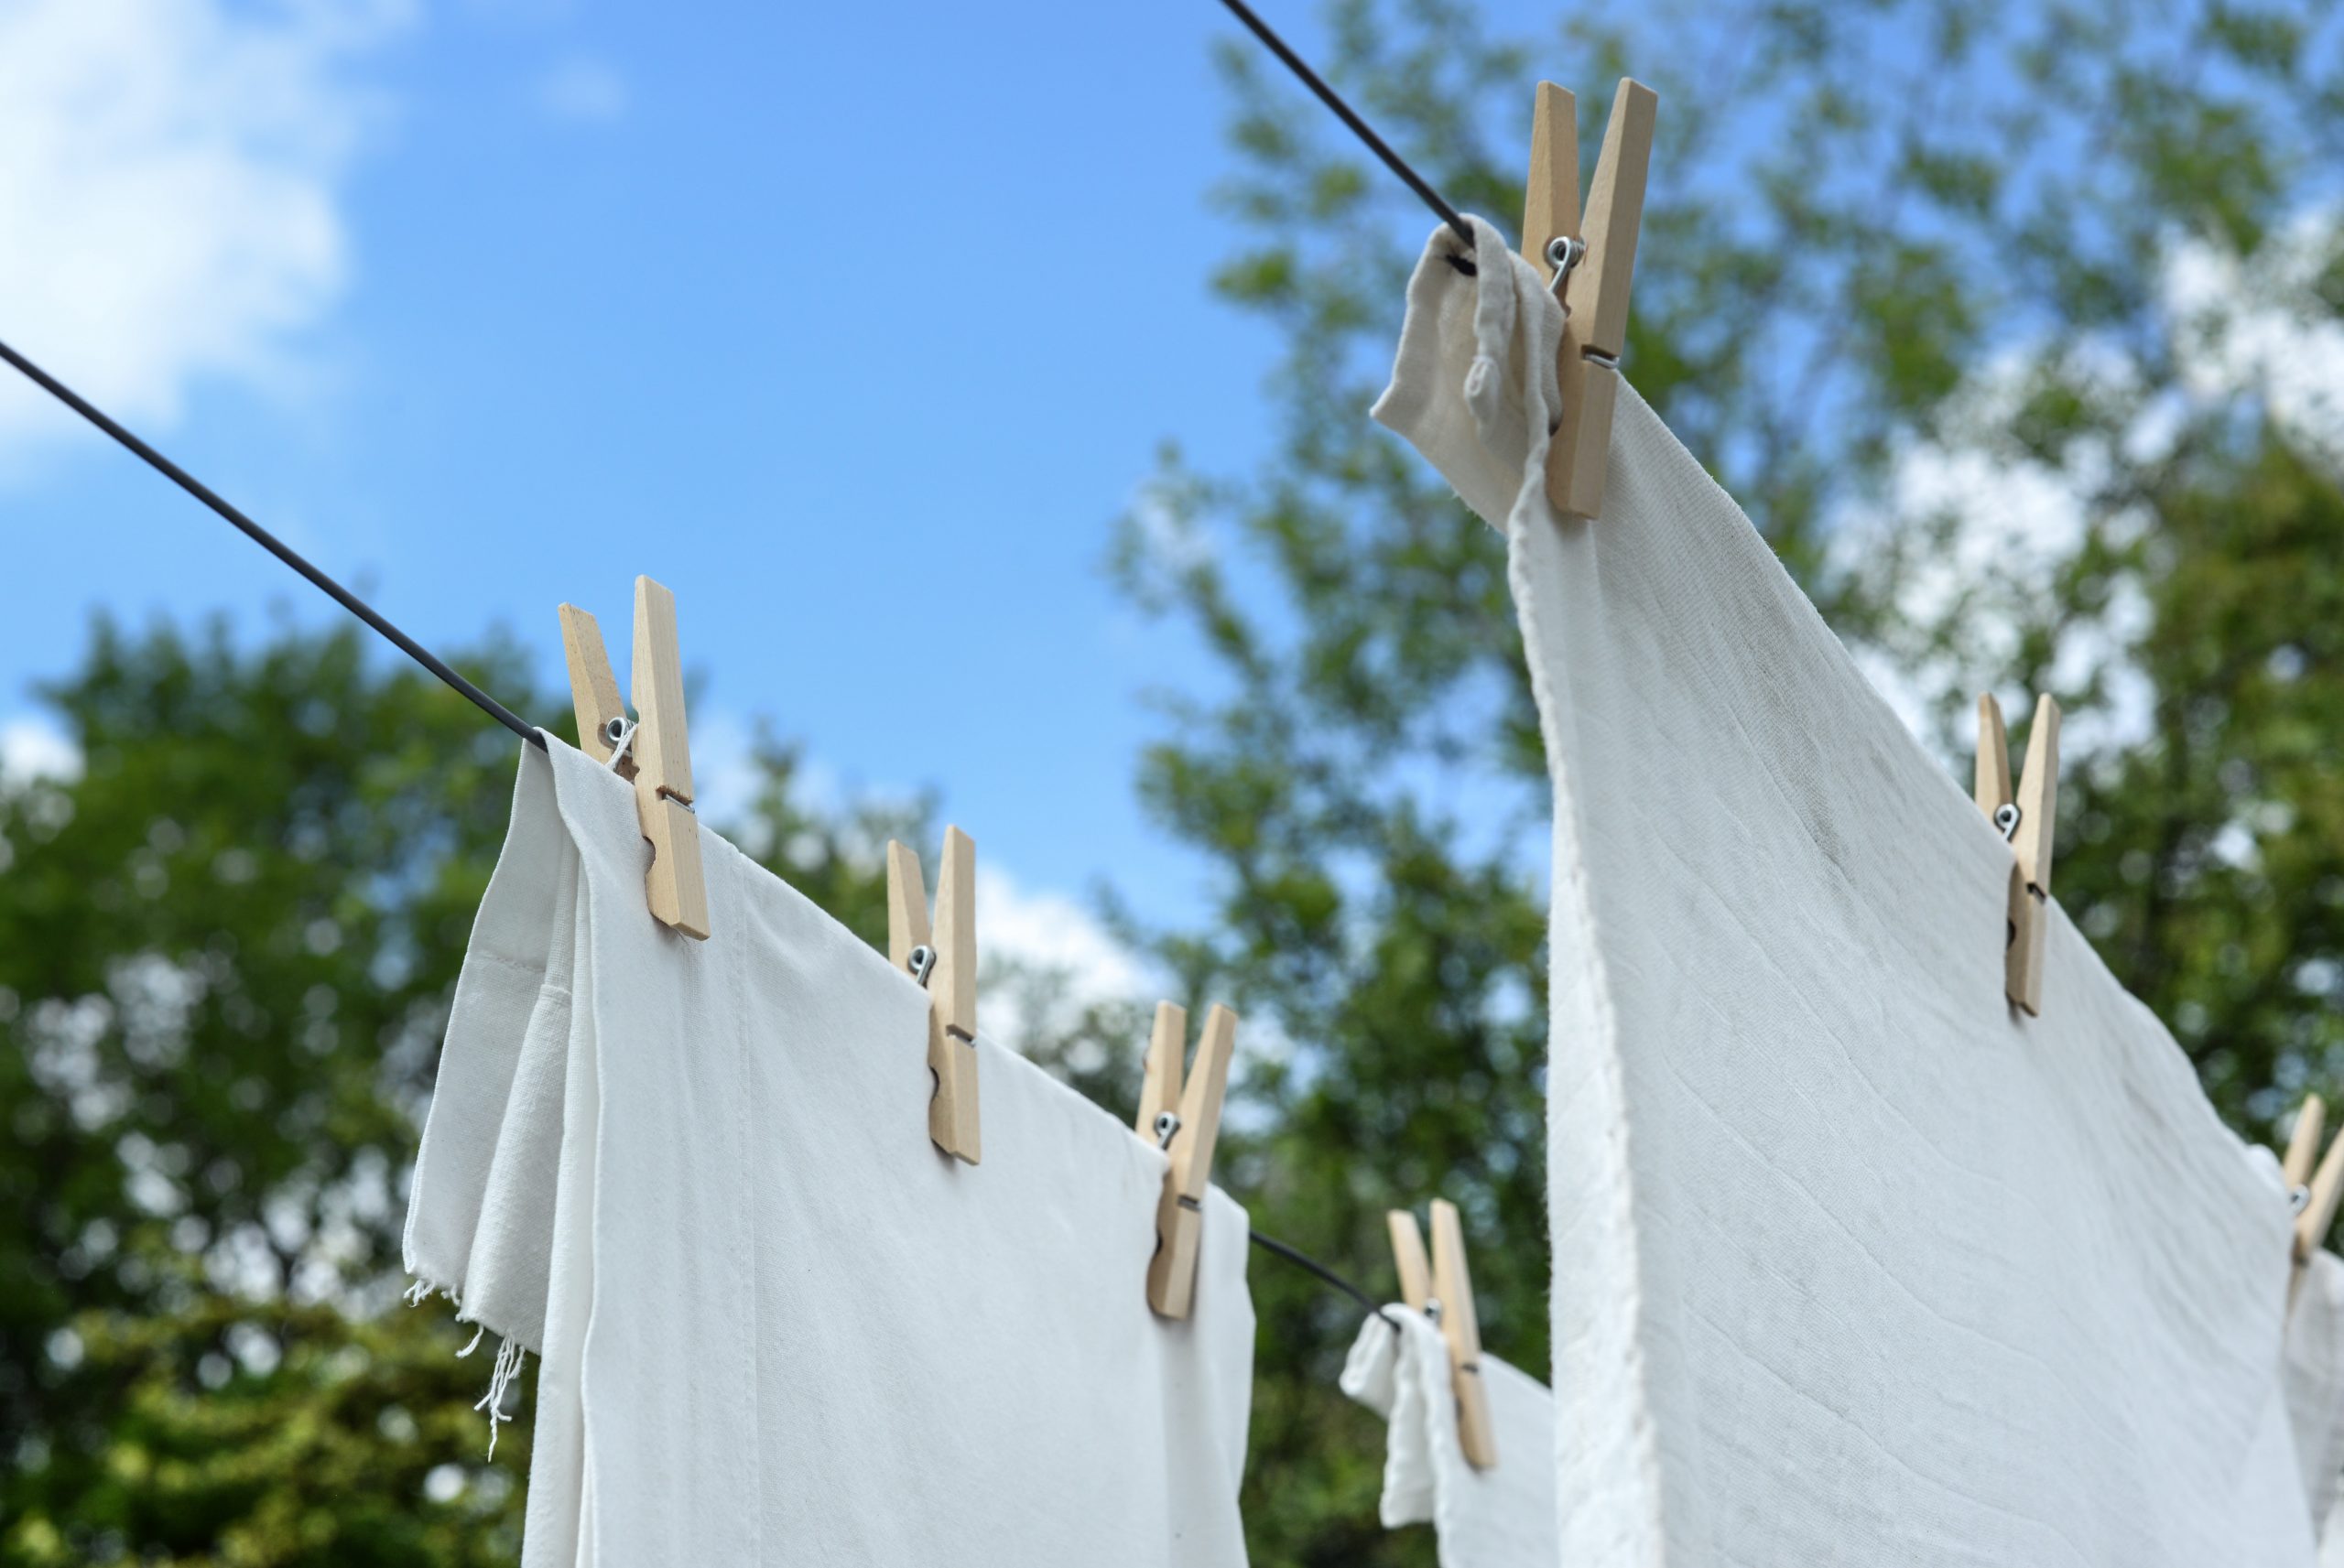 Comment blanchir ses vêtements de travail ?